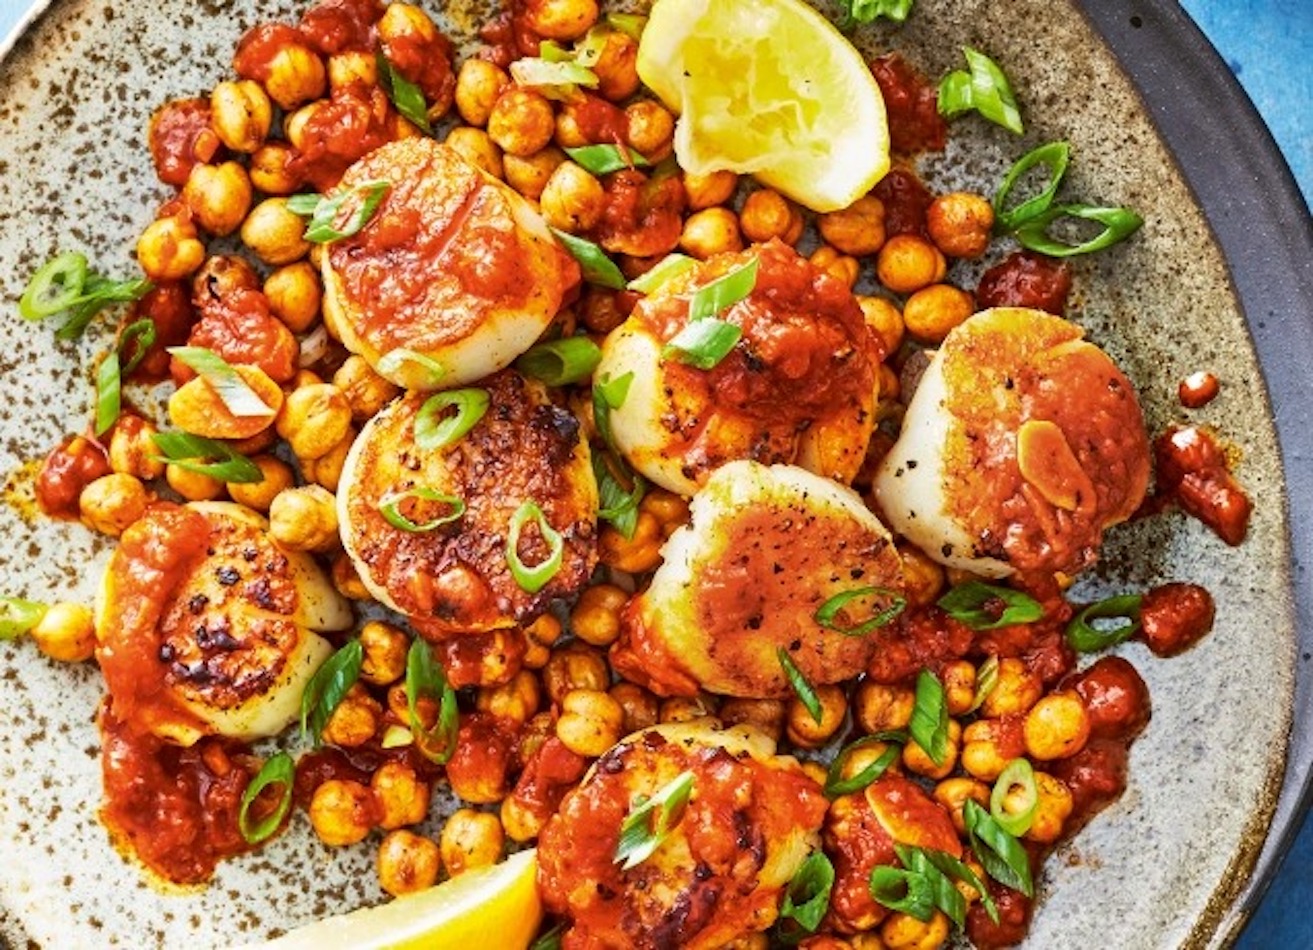 10 Mediterranean Diet Dinner Recipes